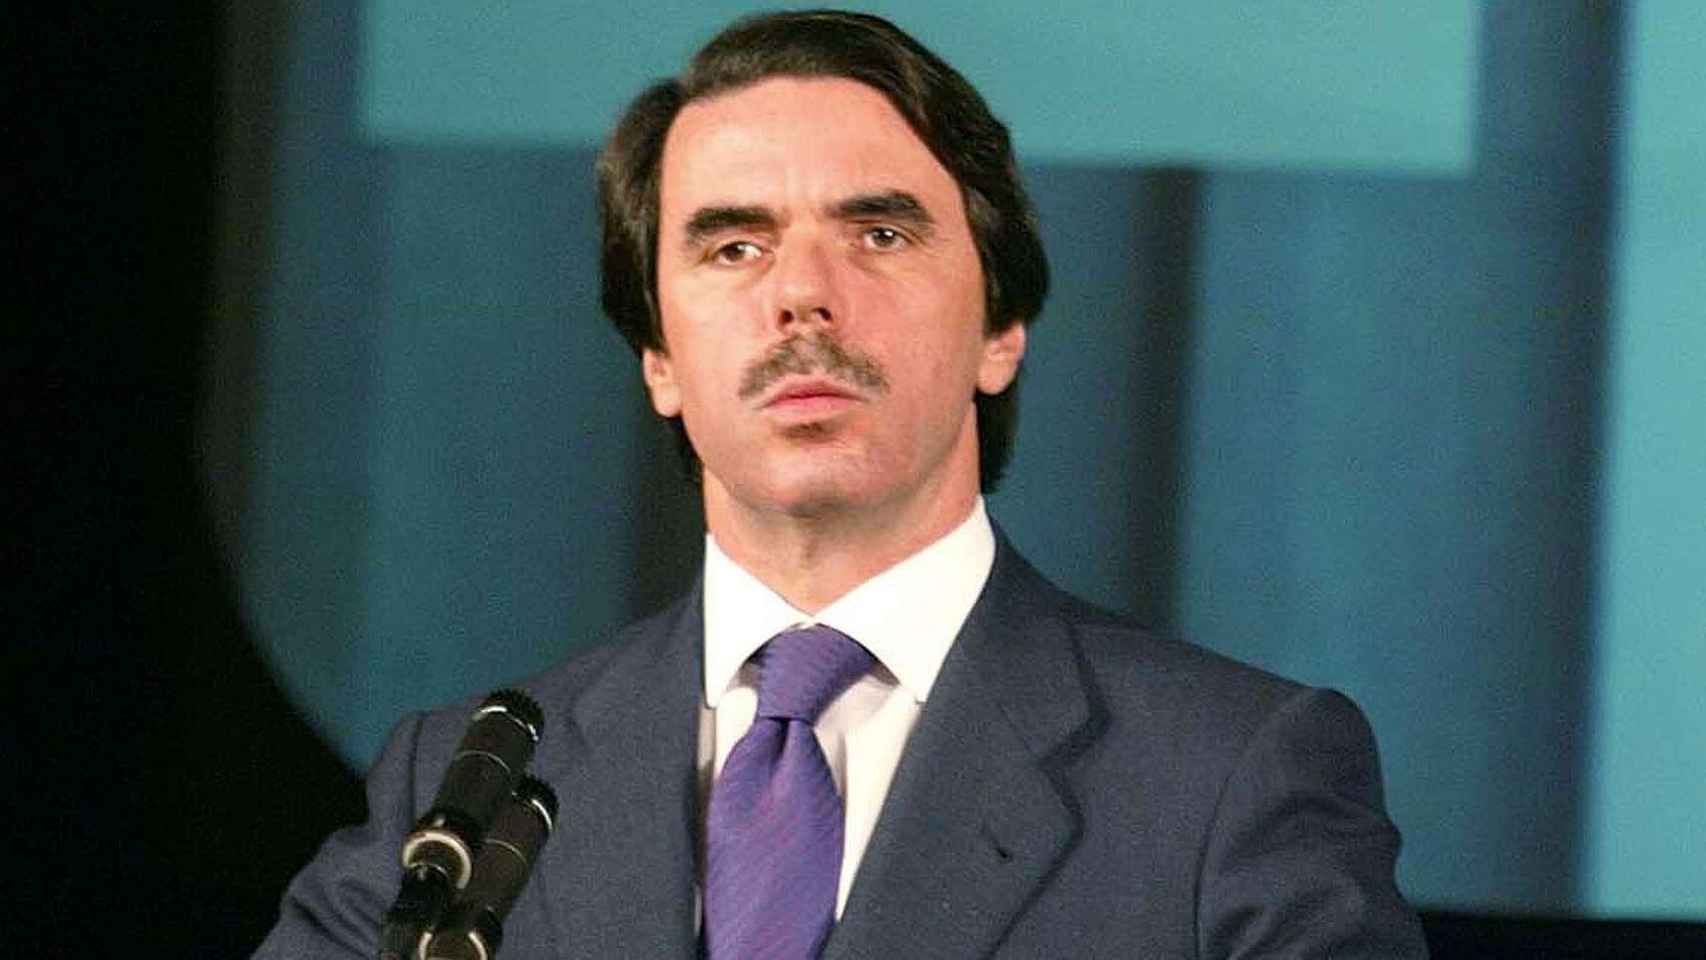 El expresidente del Gobierno José María Aznar luce bigote en una imagen de archivo / CG